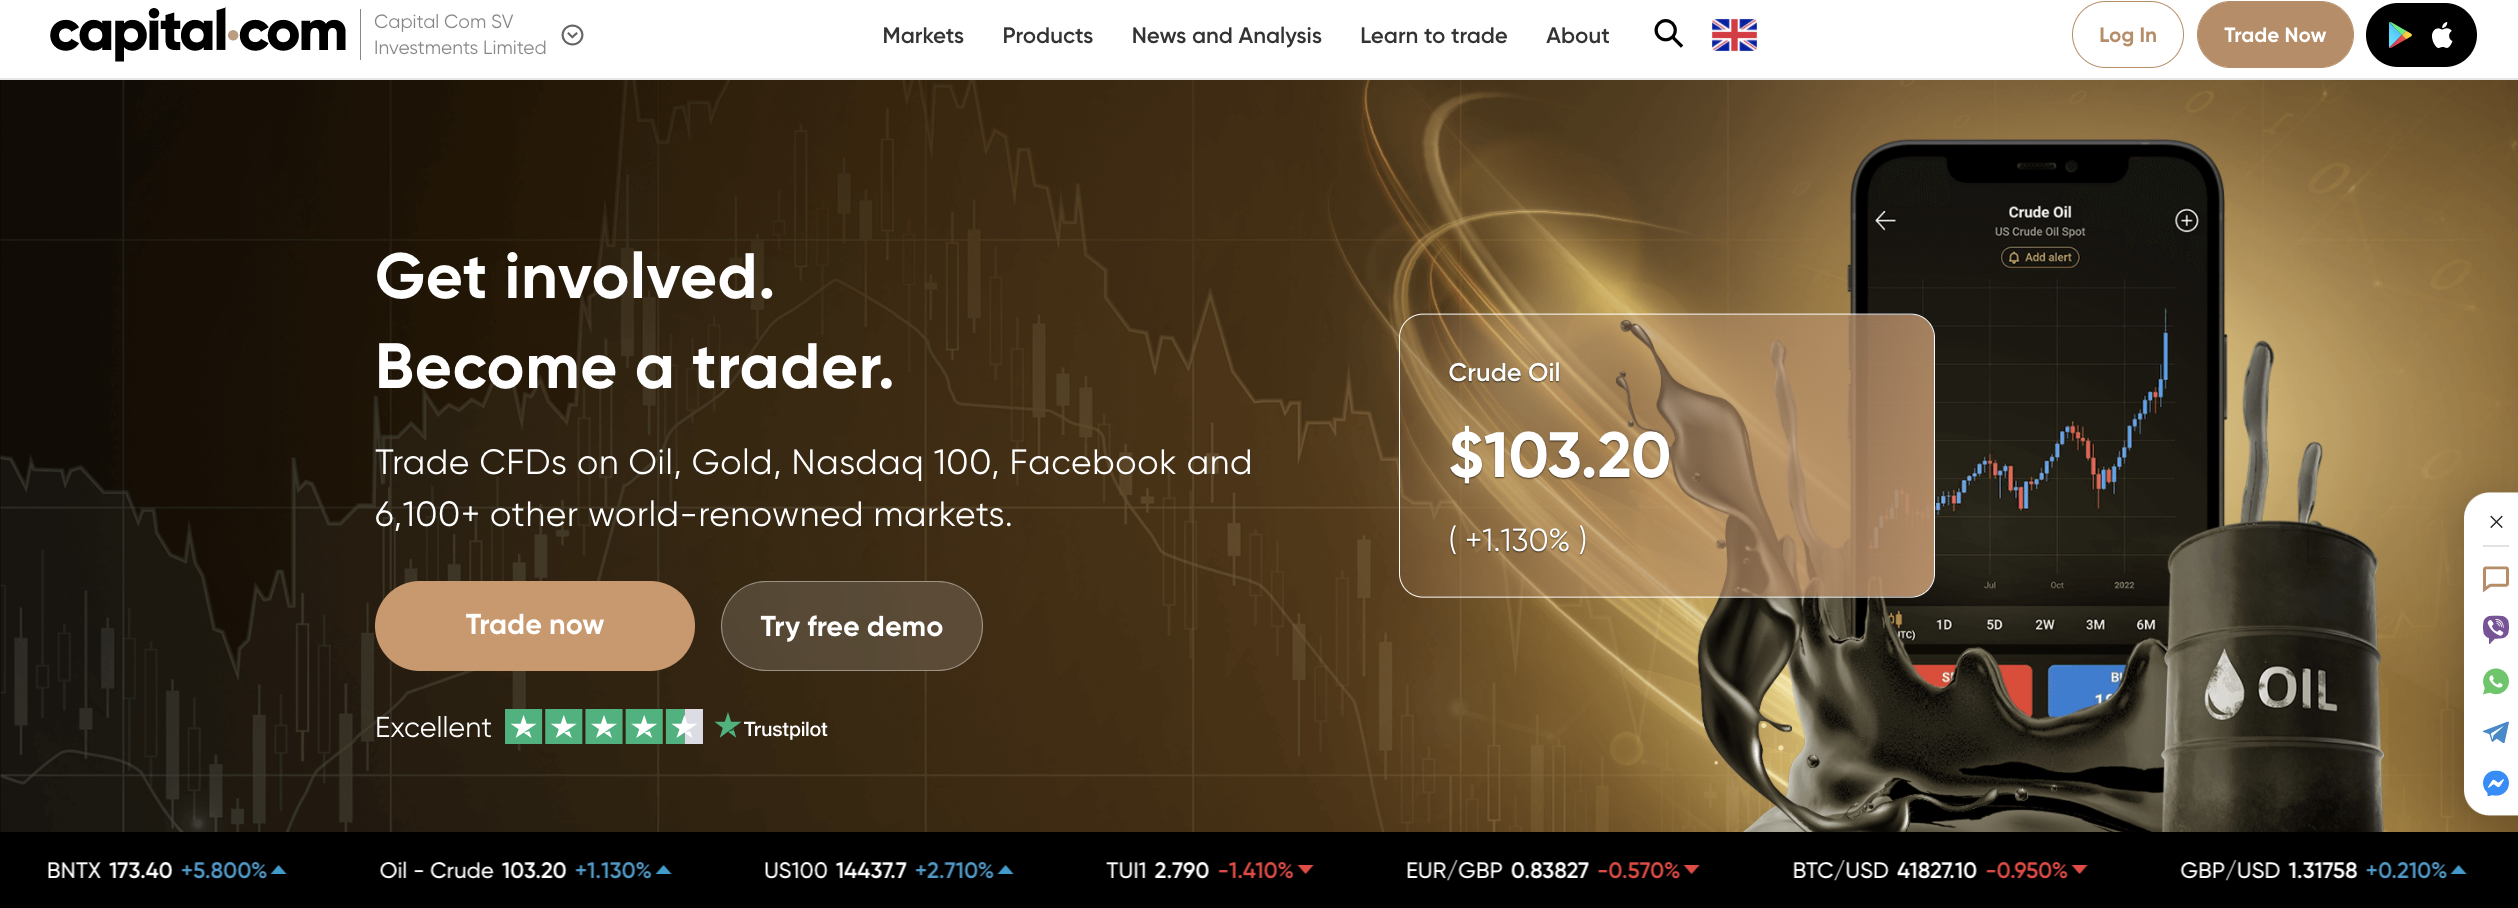 El sitio web oficial del corredor de divisas Capital.com